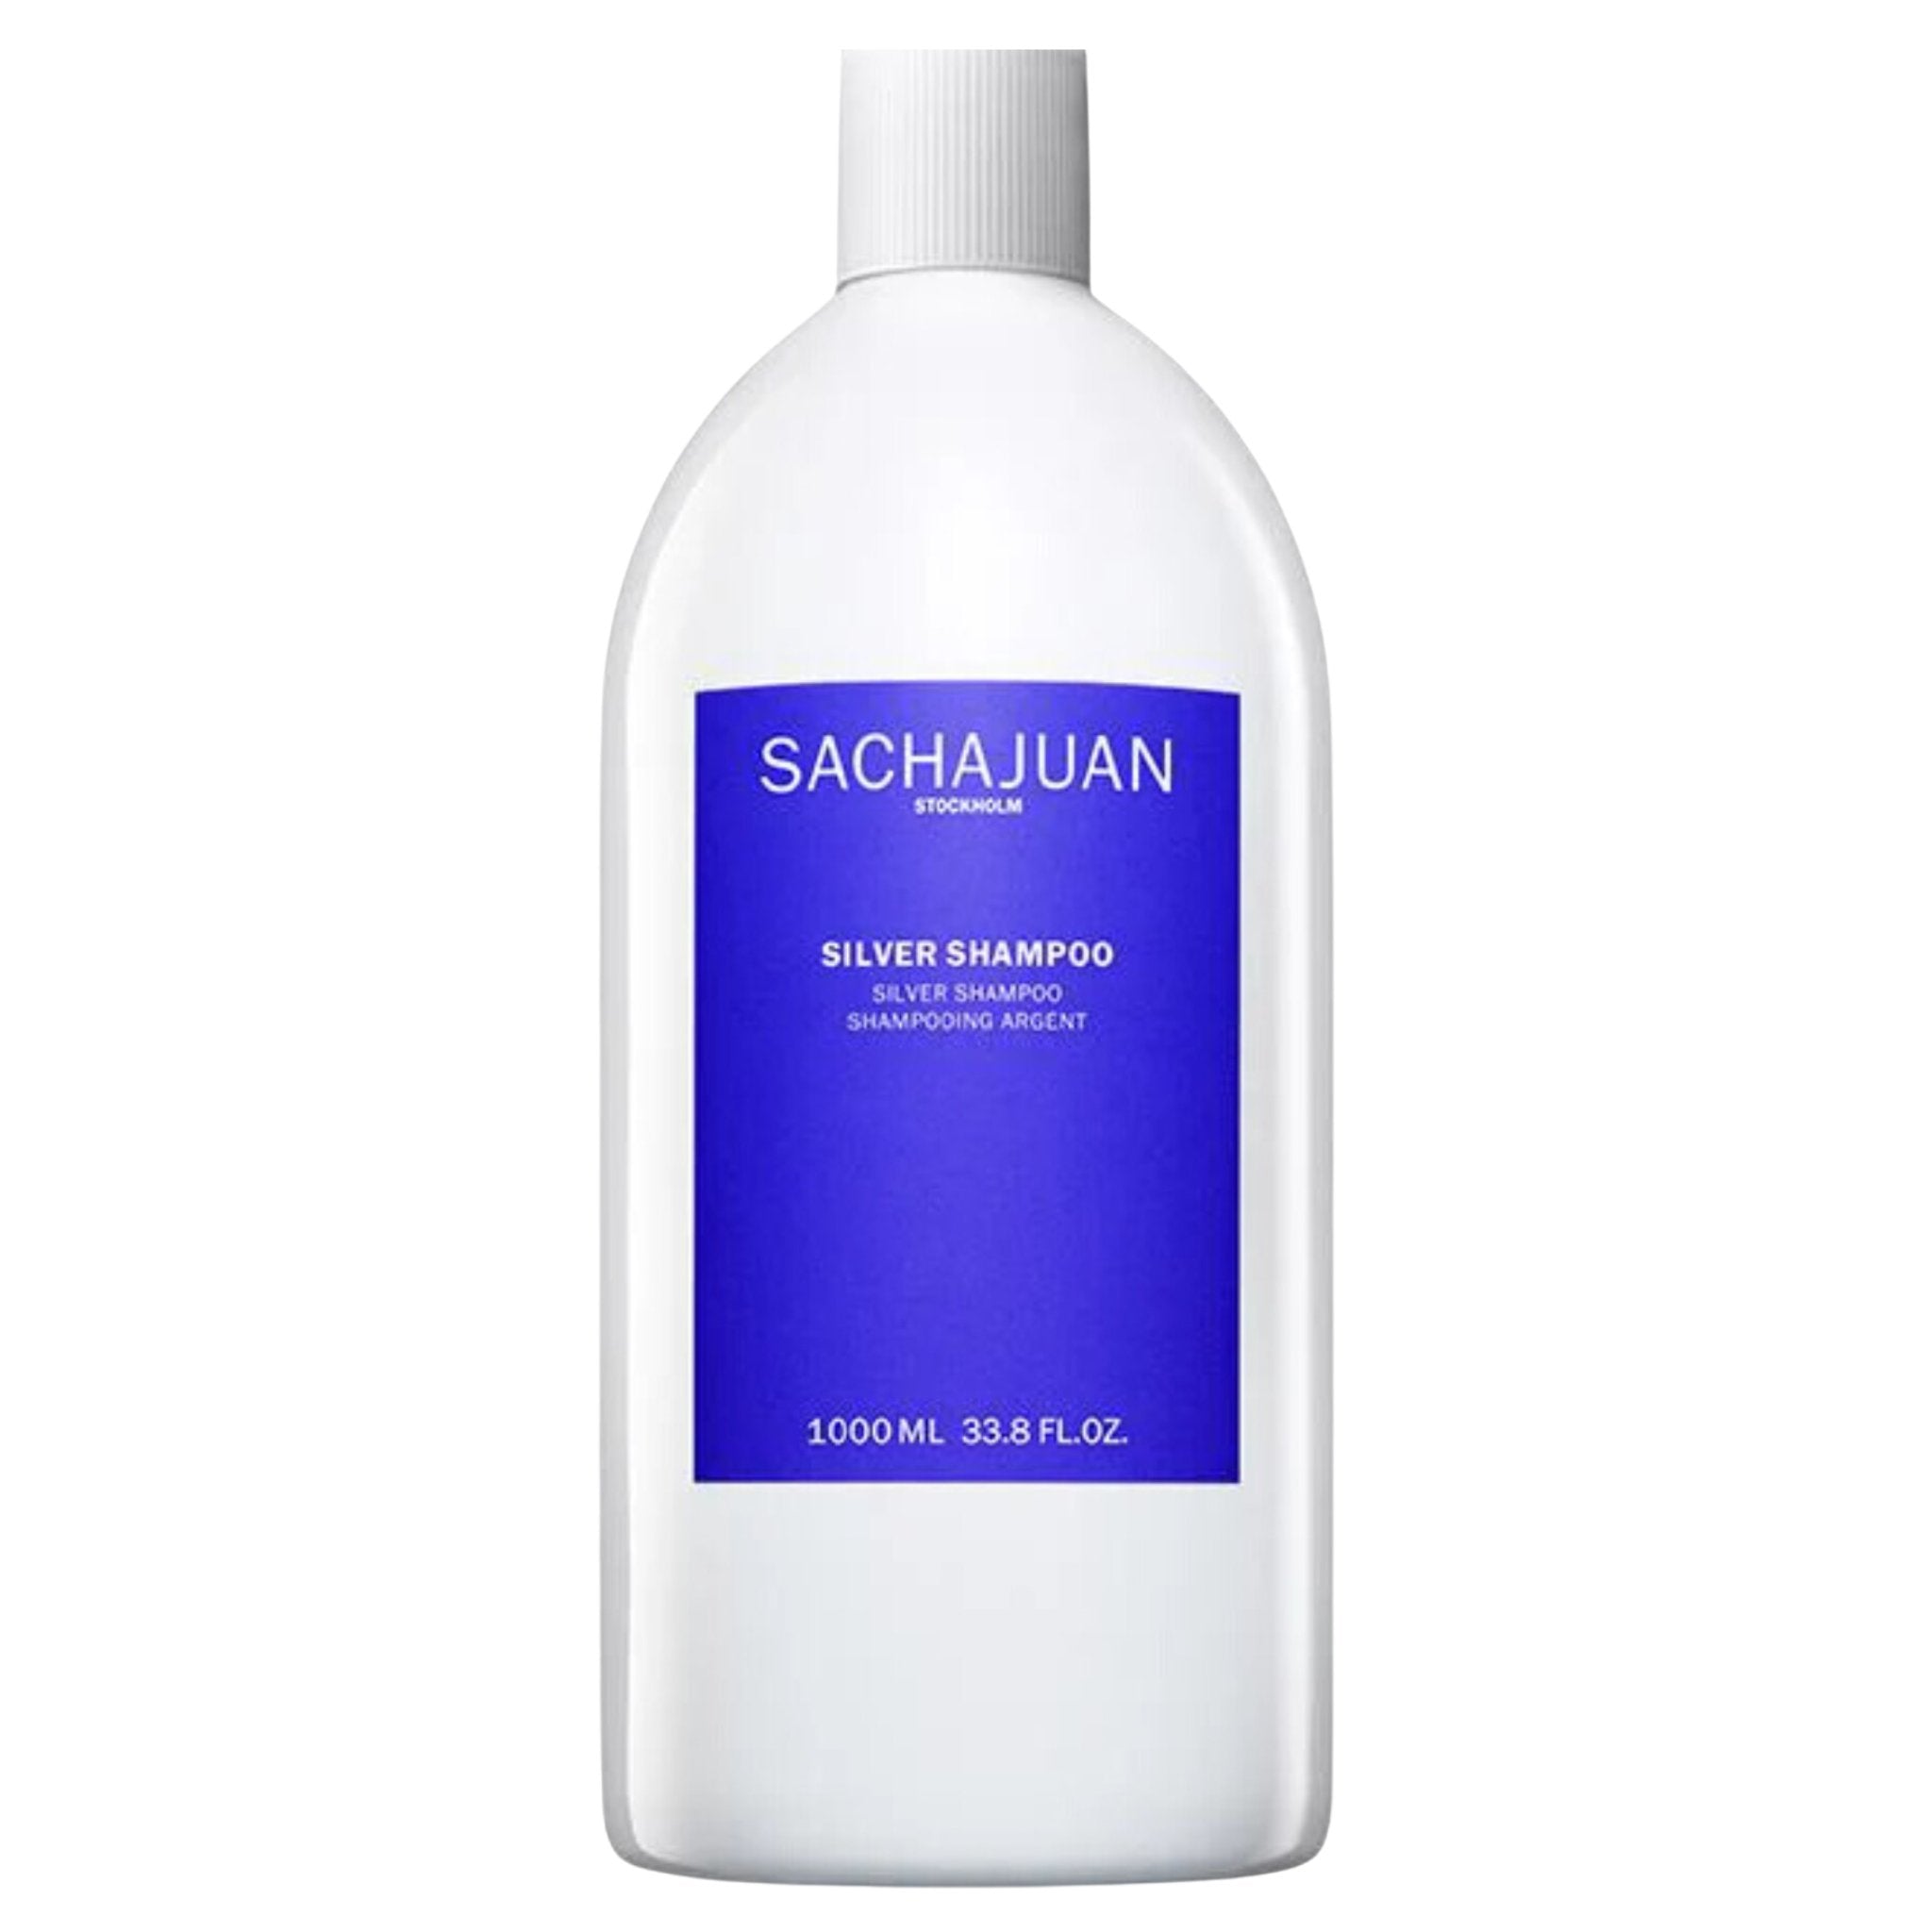 Sachajuan. Shampoing Argent - 1000 ml - Concept C. Shop